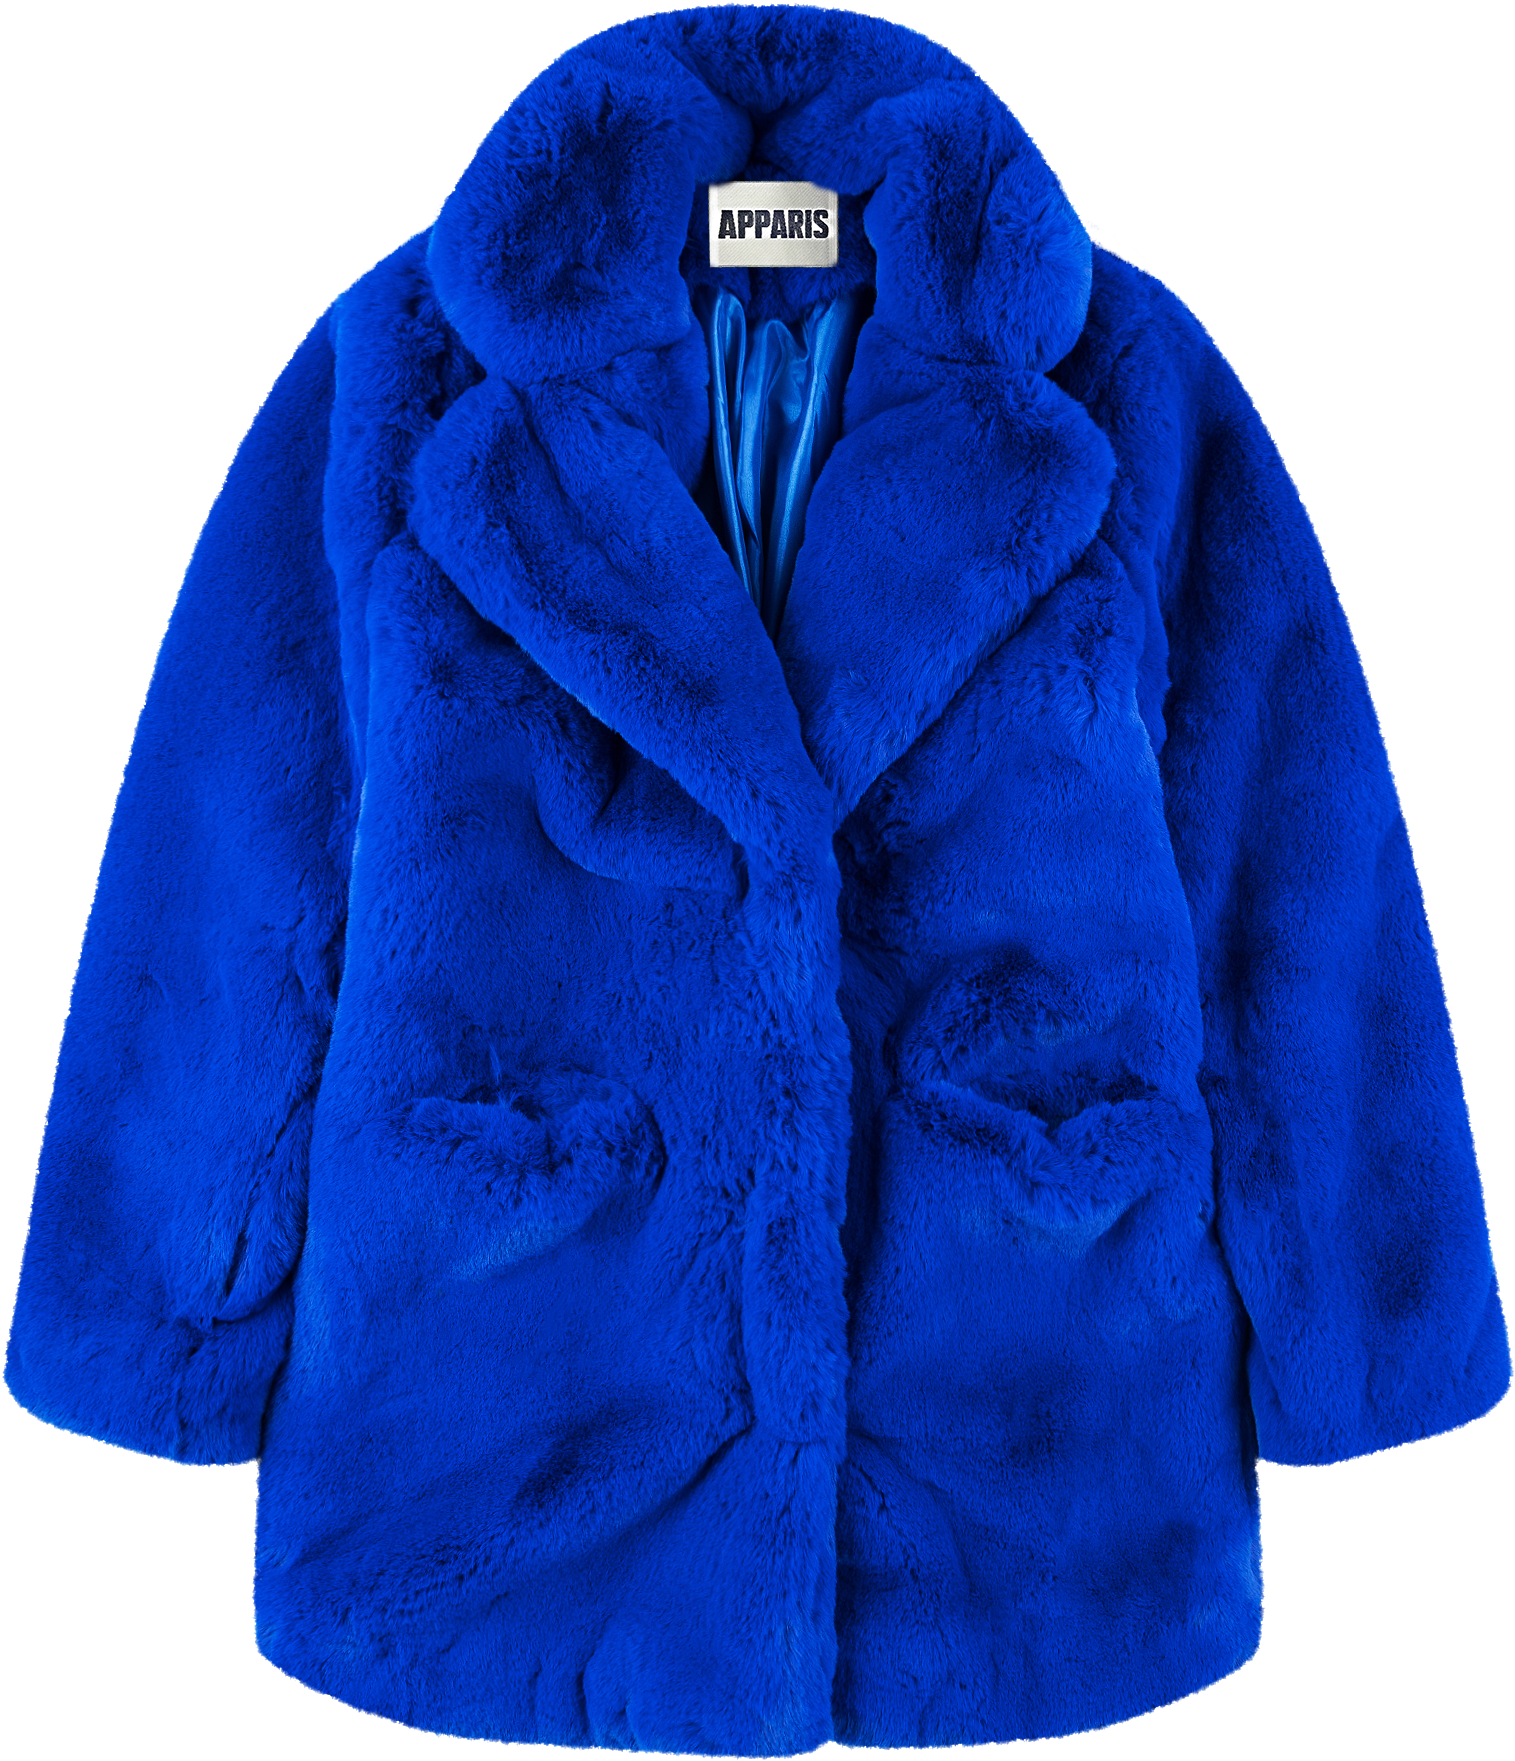 Blue Faux Fur Coat Apparis Brand PNG